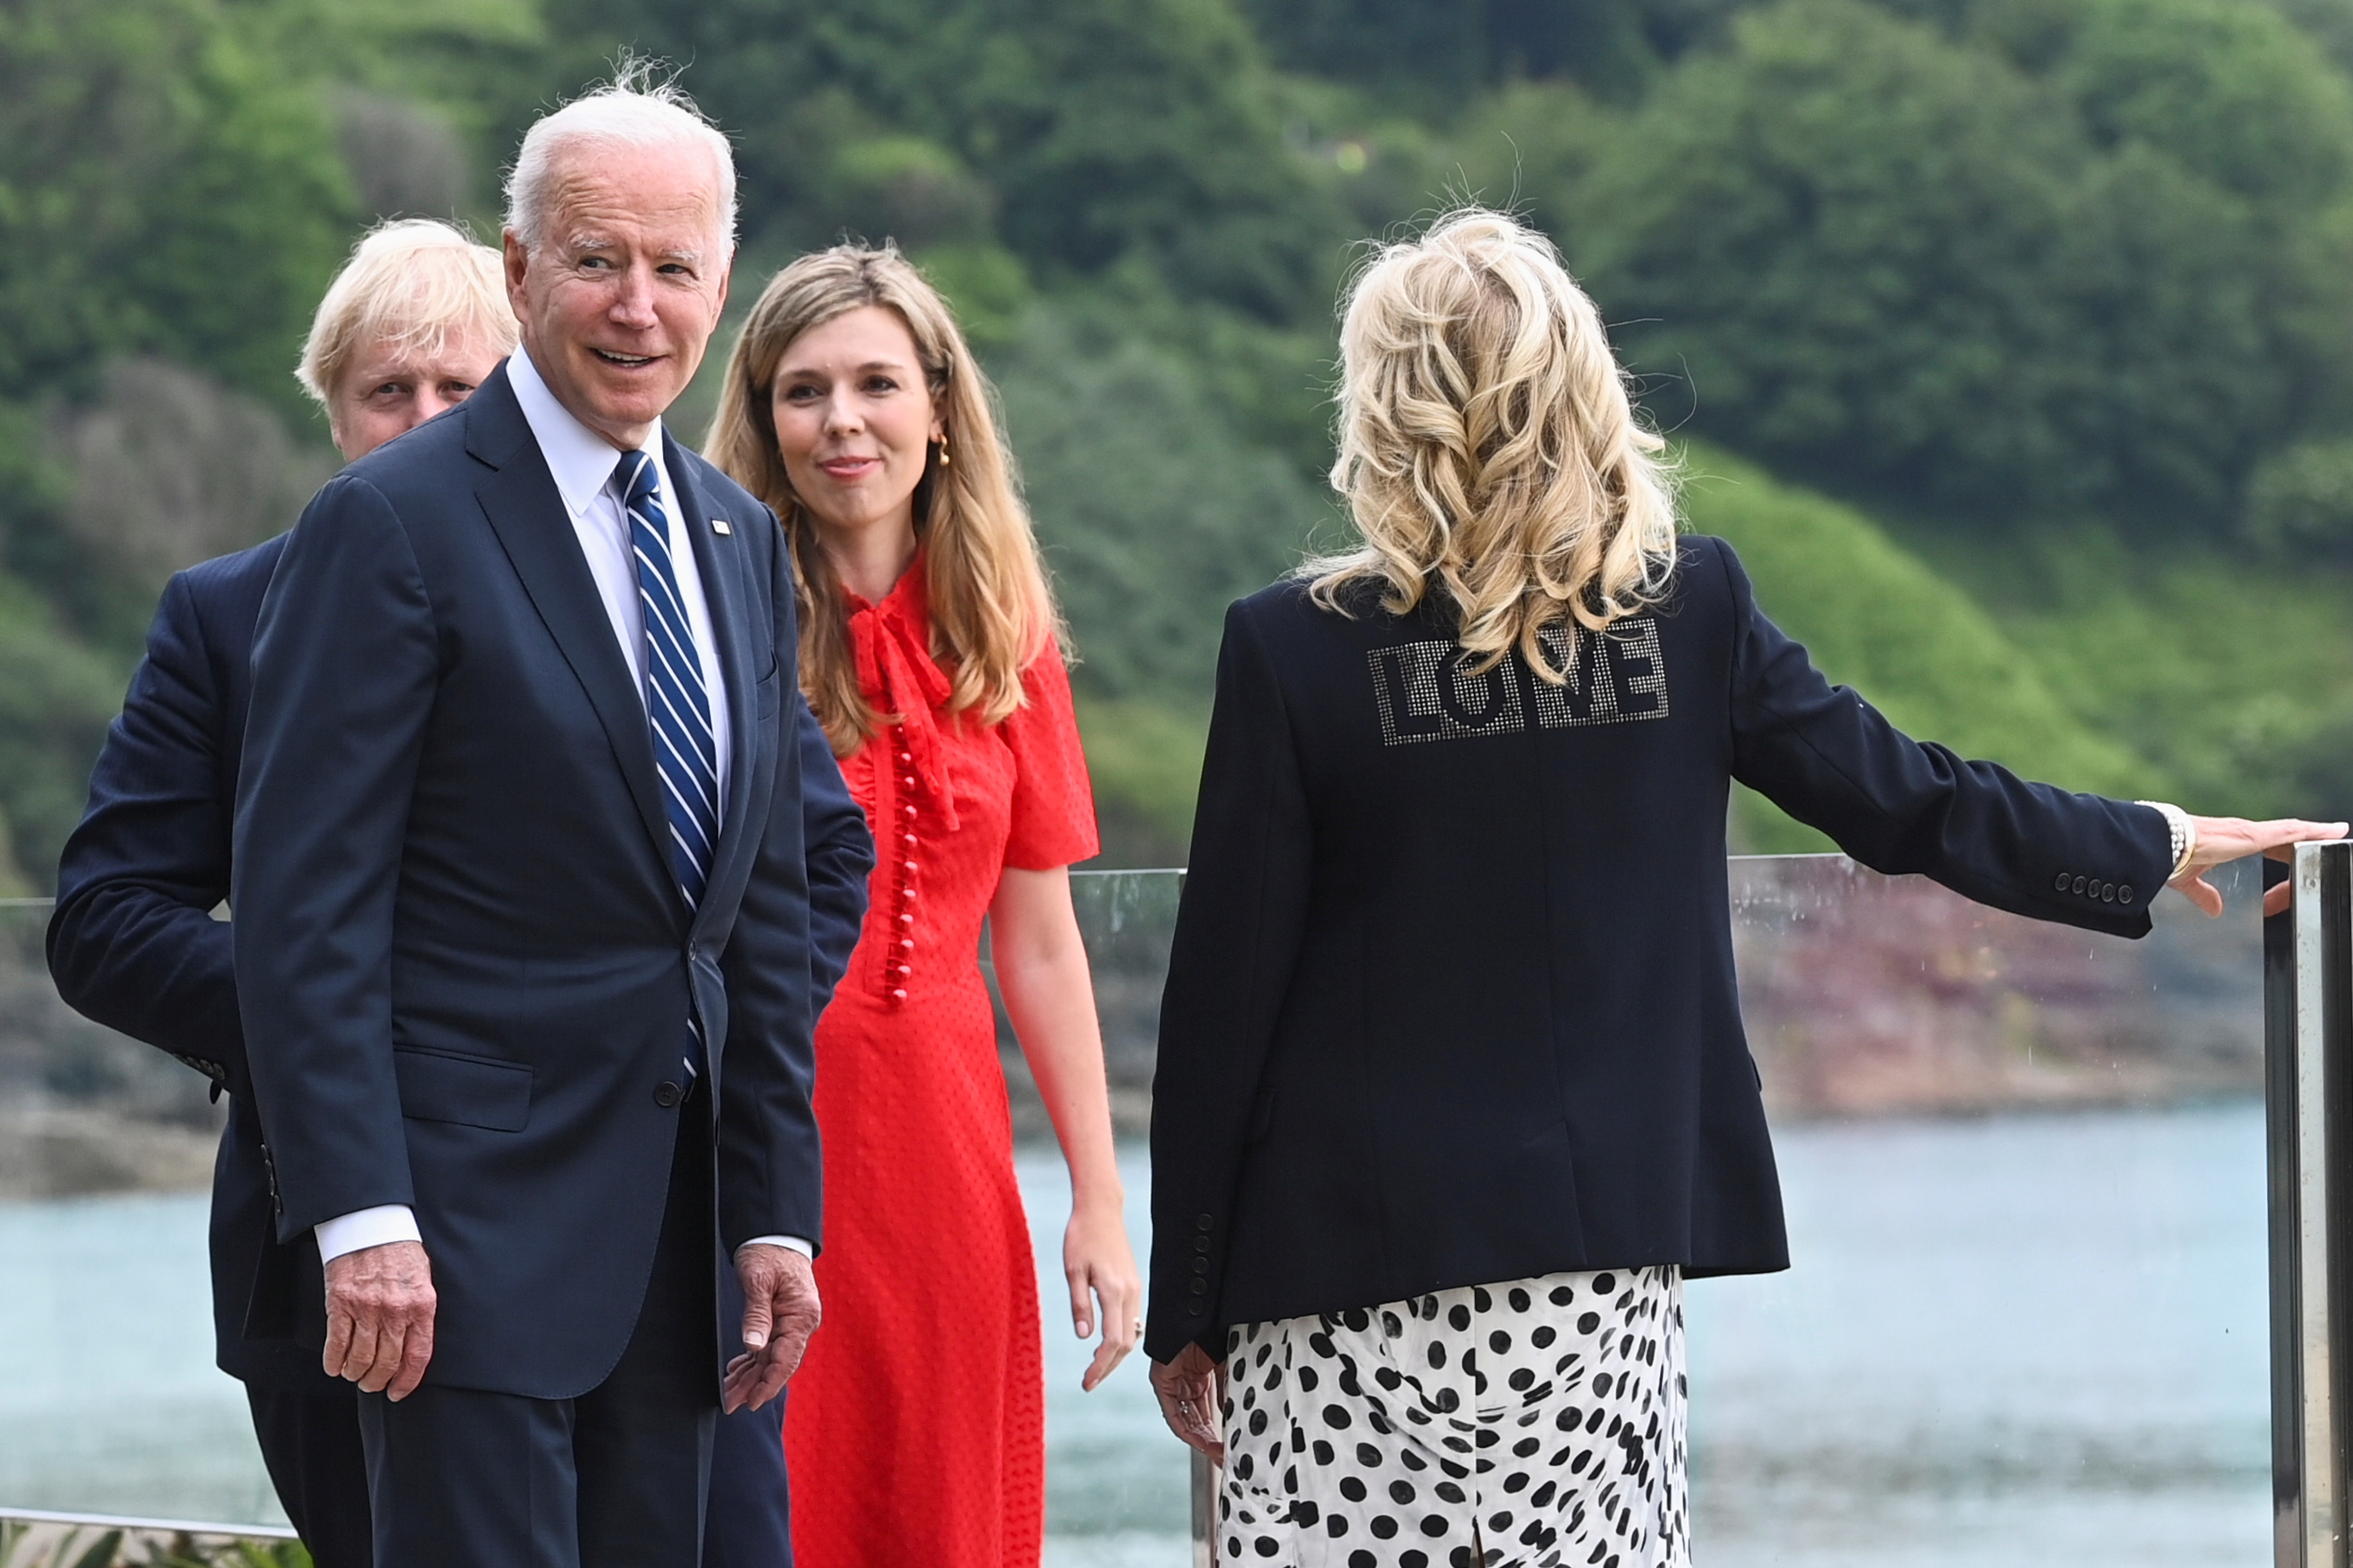 La primera dama Jill Biden manda un mensaje de amor a través de su outfit